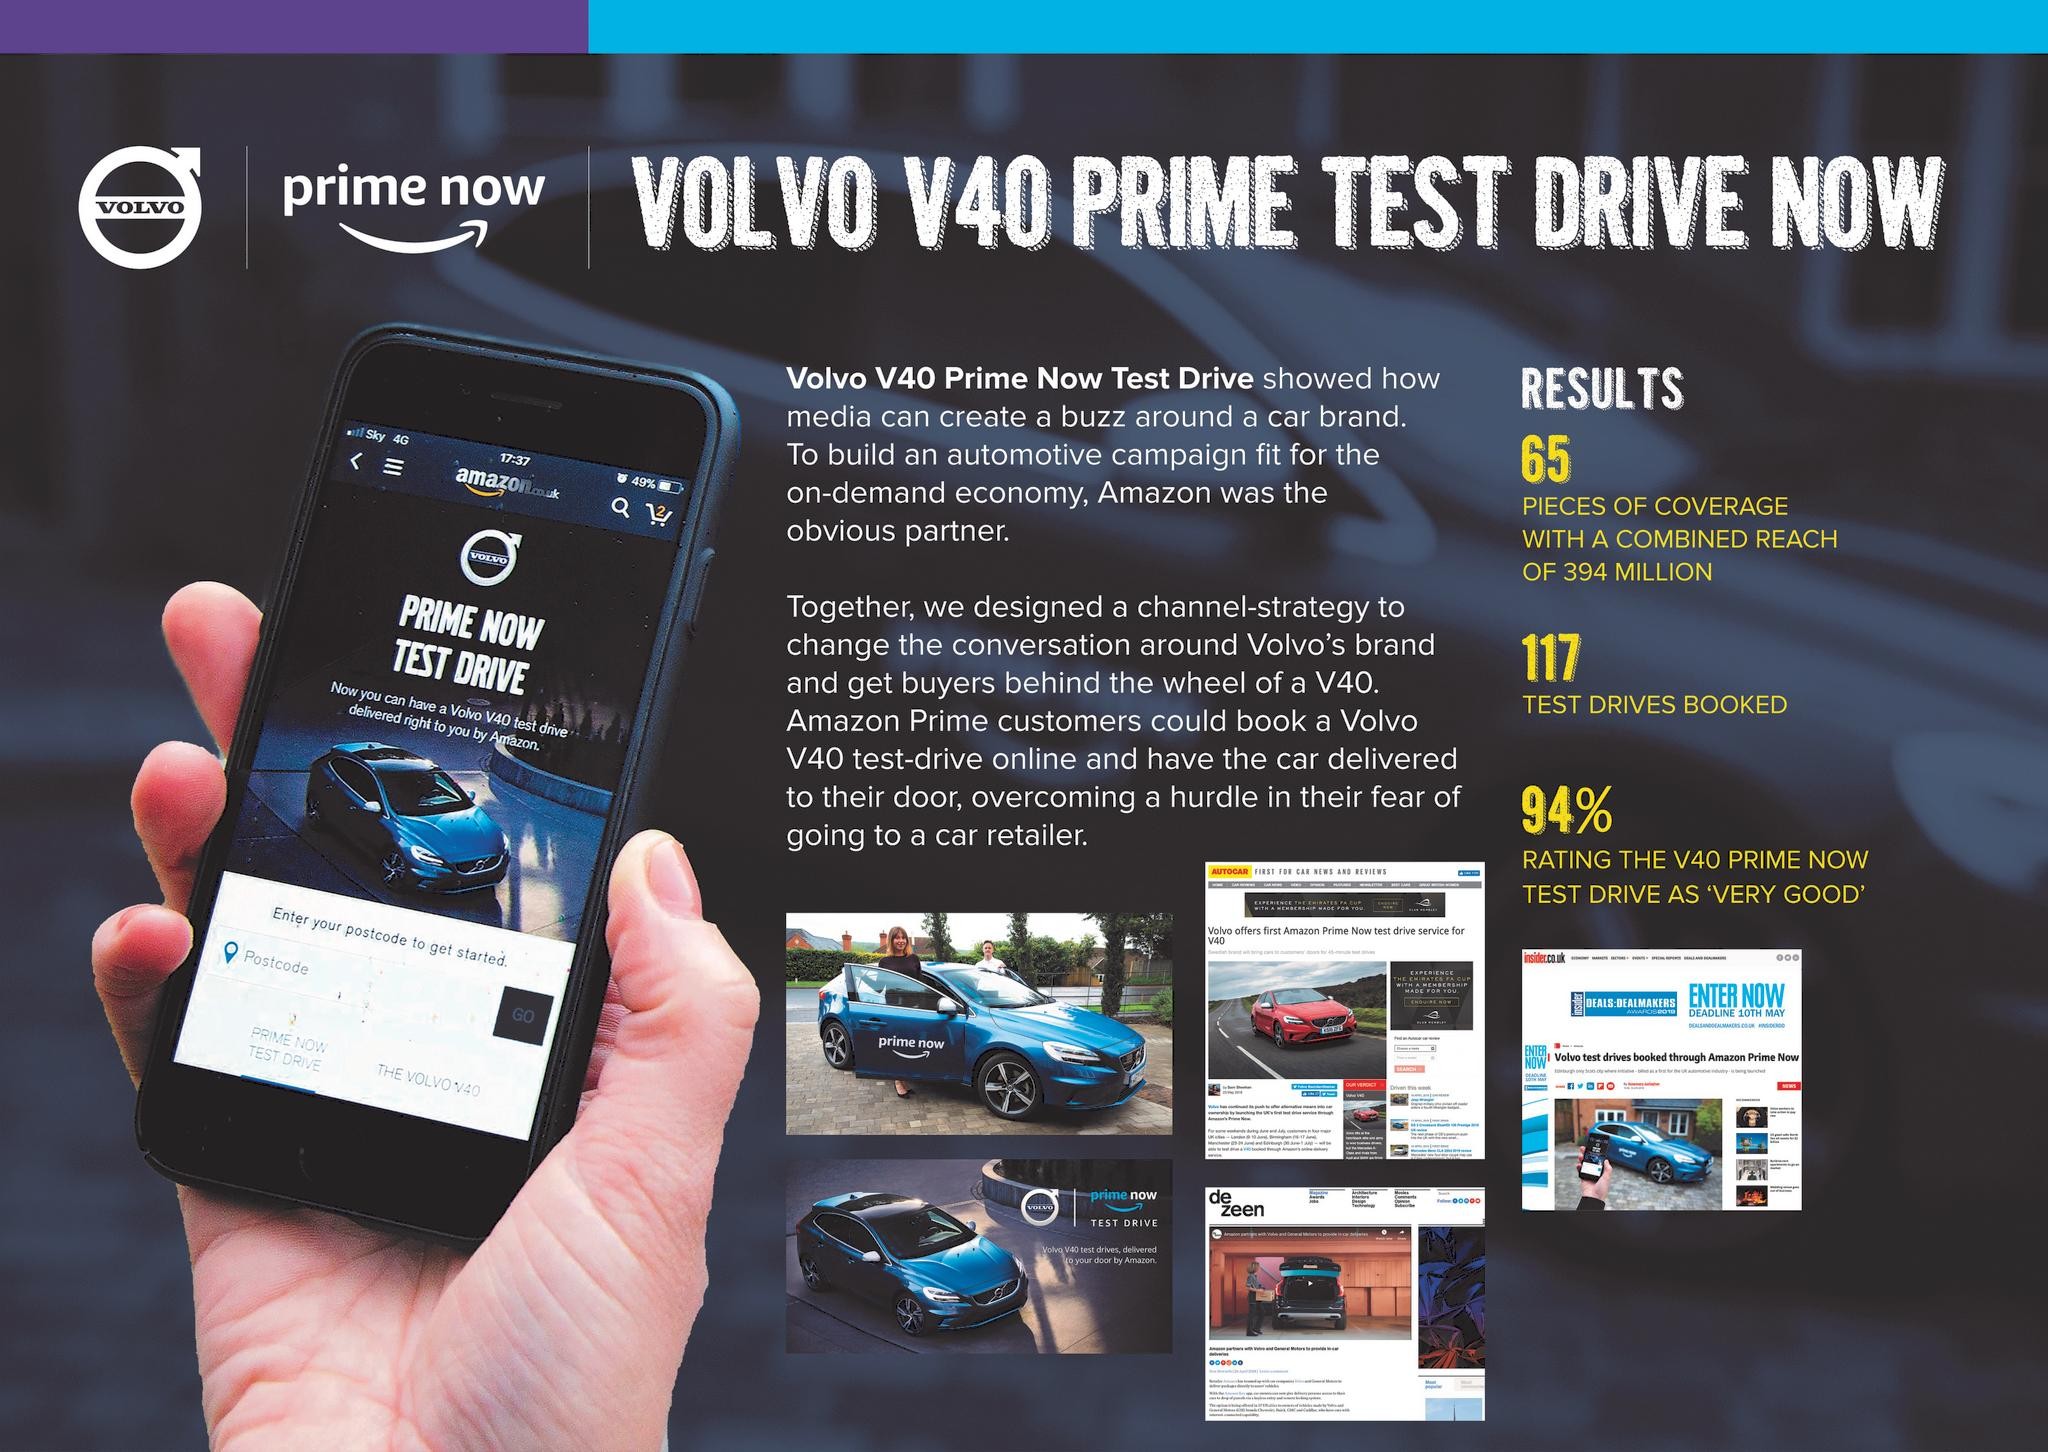 Volvo V40 Prime Test Drive